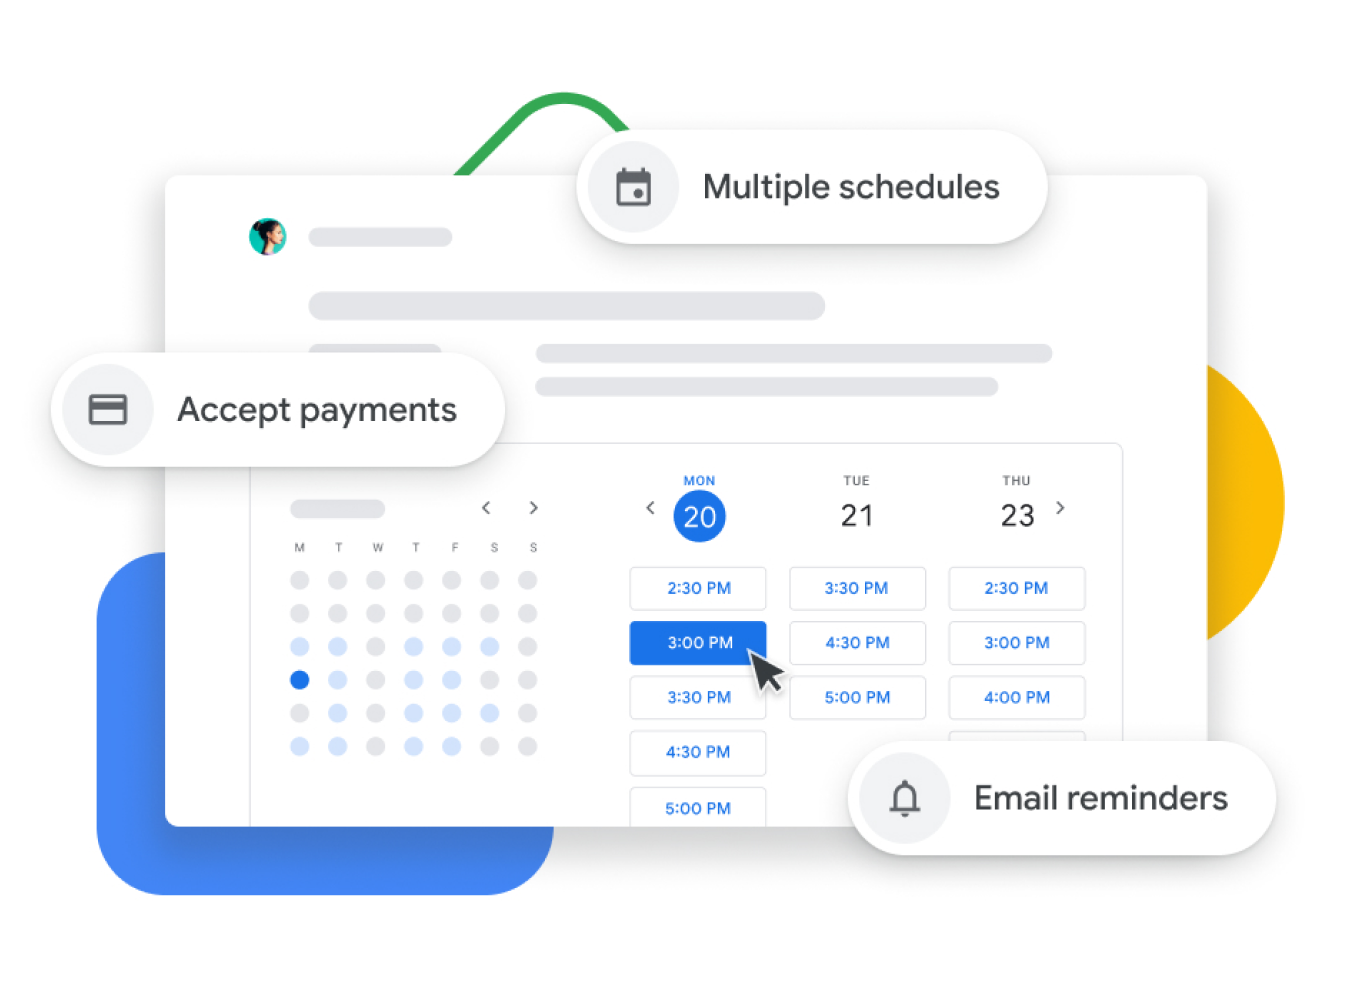 Ilustrasi grafis Google Kalender dengan penjadwalan janji temu yang memungkinkan pengguna menerima pembayaran, memverifikasi janji temu dengan klien, dan mengirimkan pengingat melalui email.